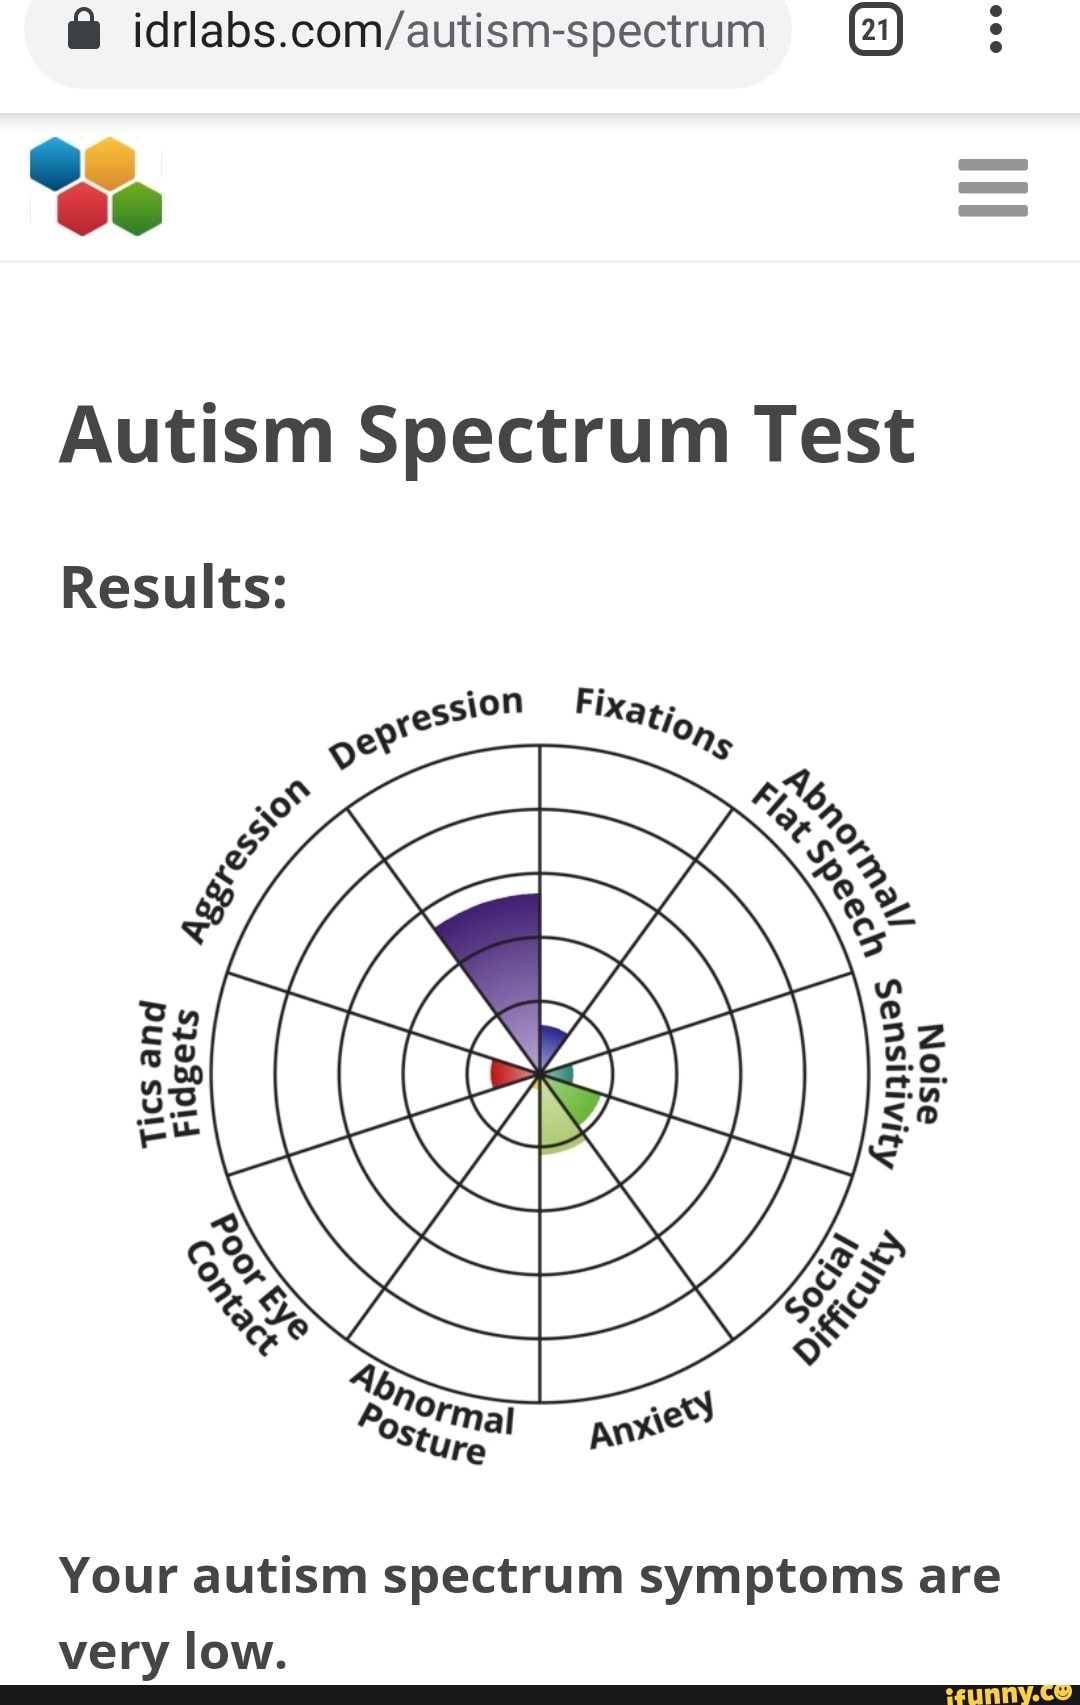 autism spectrum test score